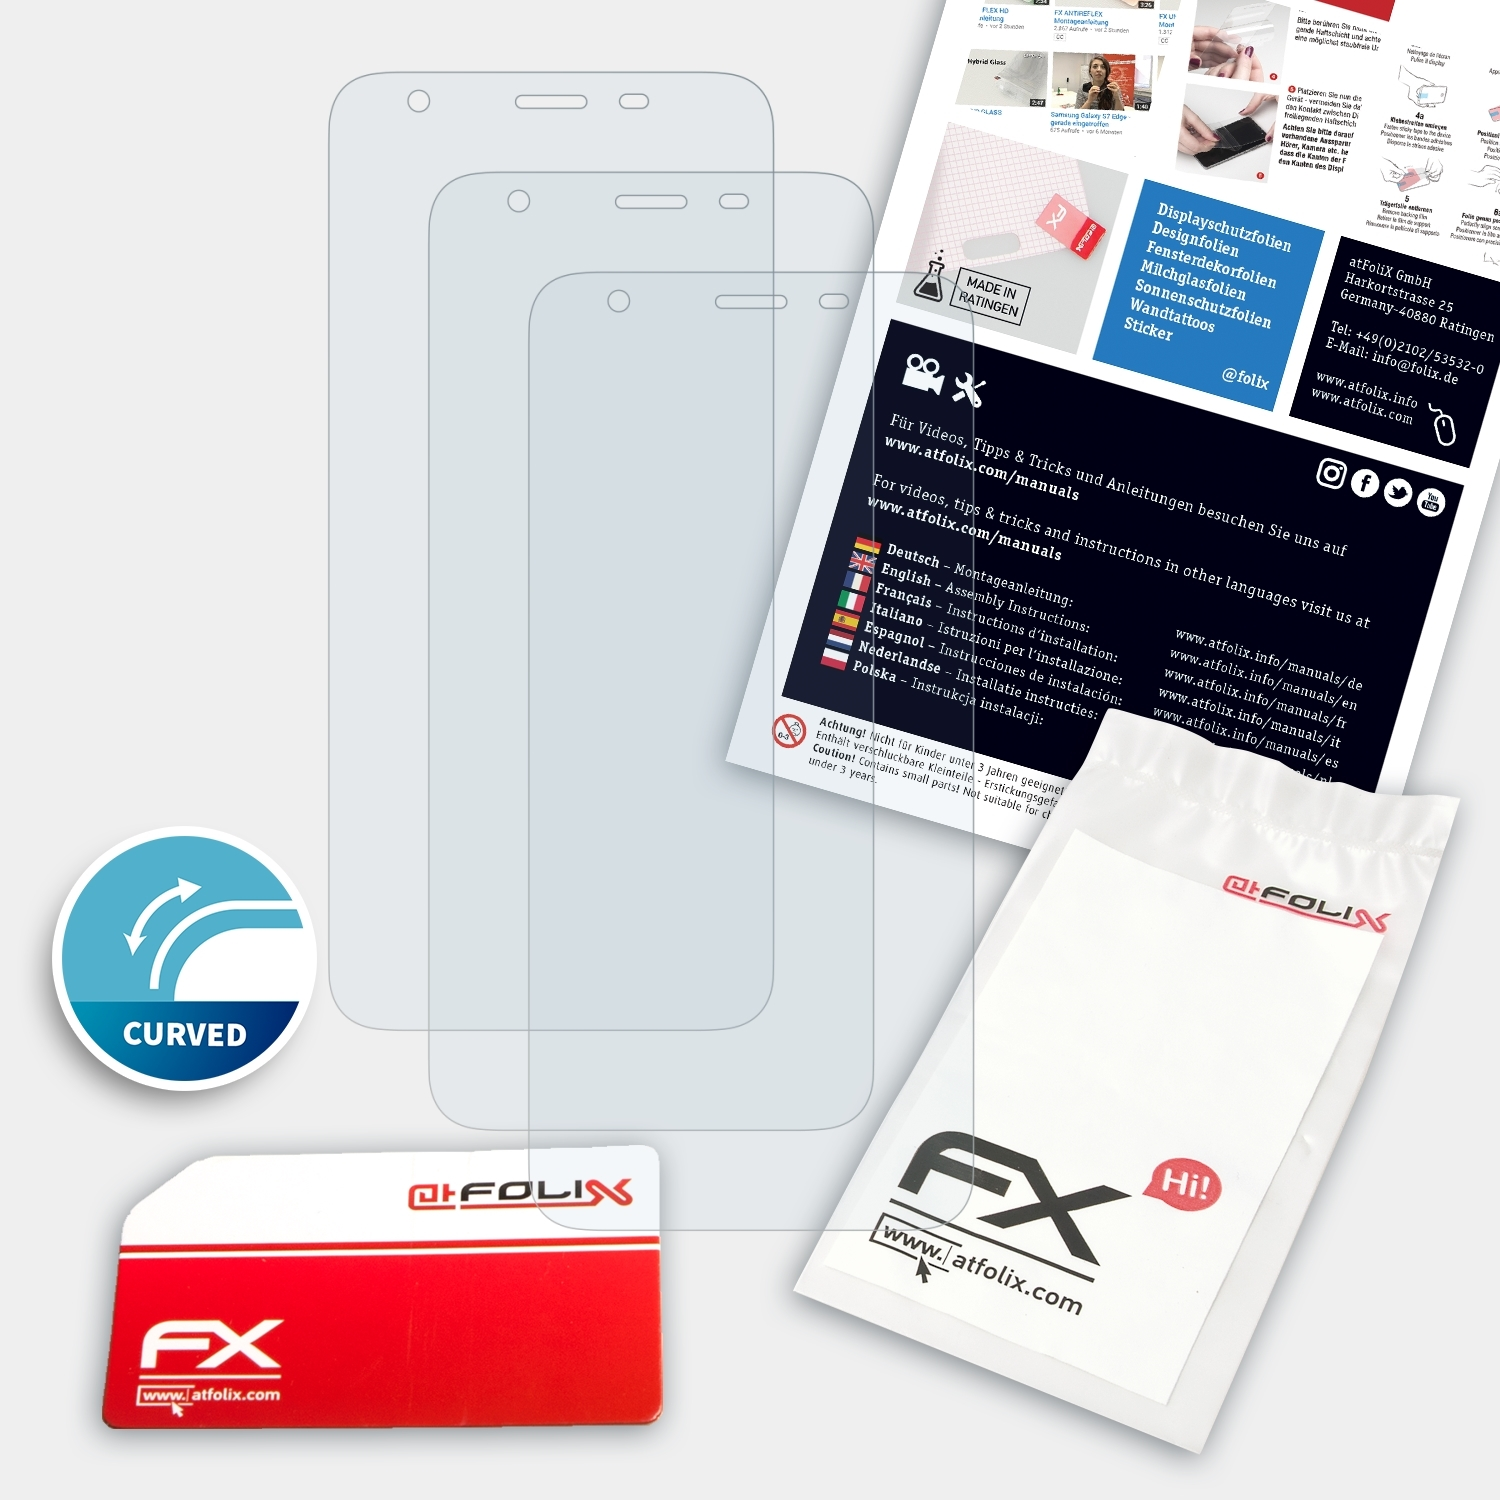 3x ATFOLIX FX-ActiFleX Pro) Displayschutz(für S9 Ulefone